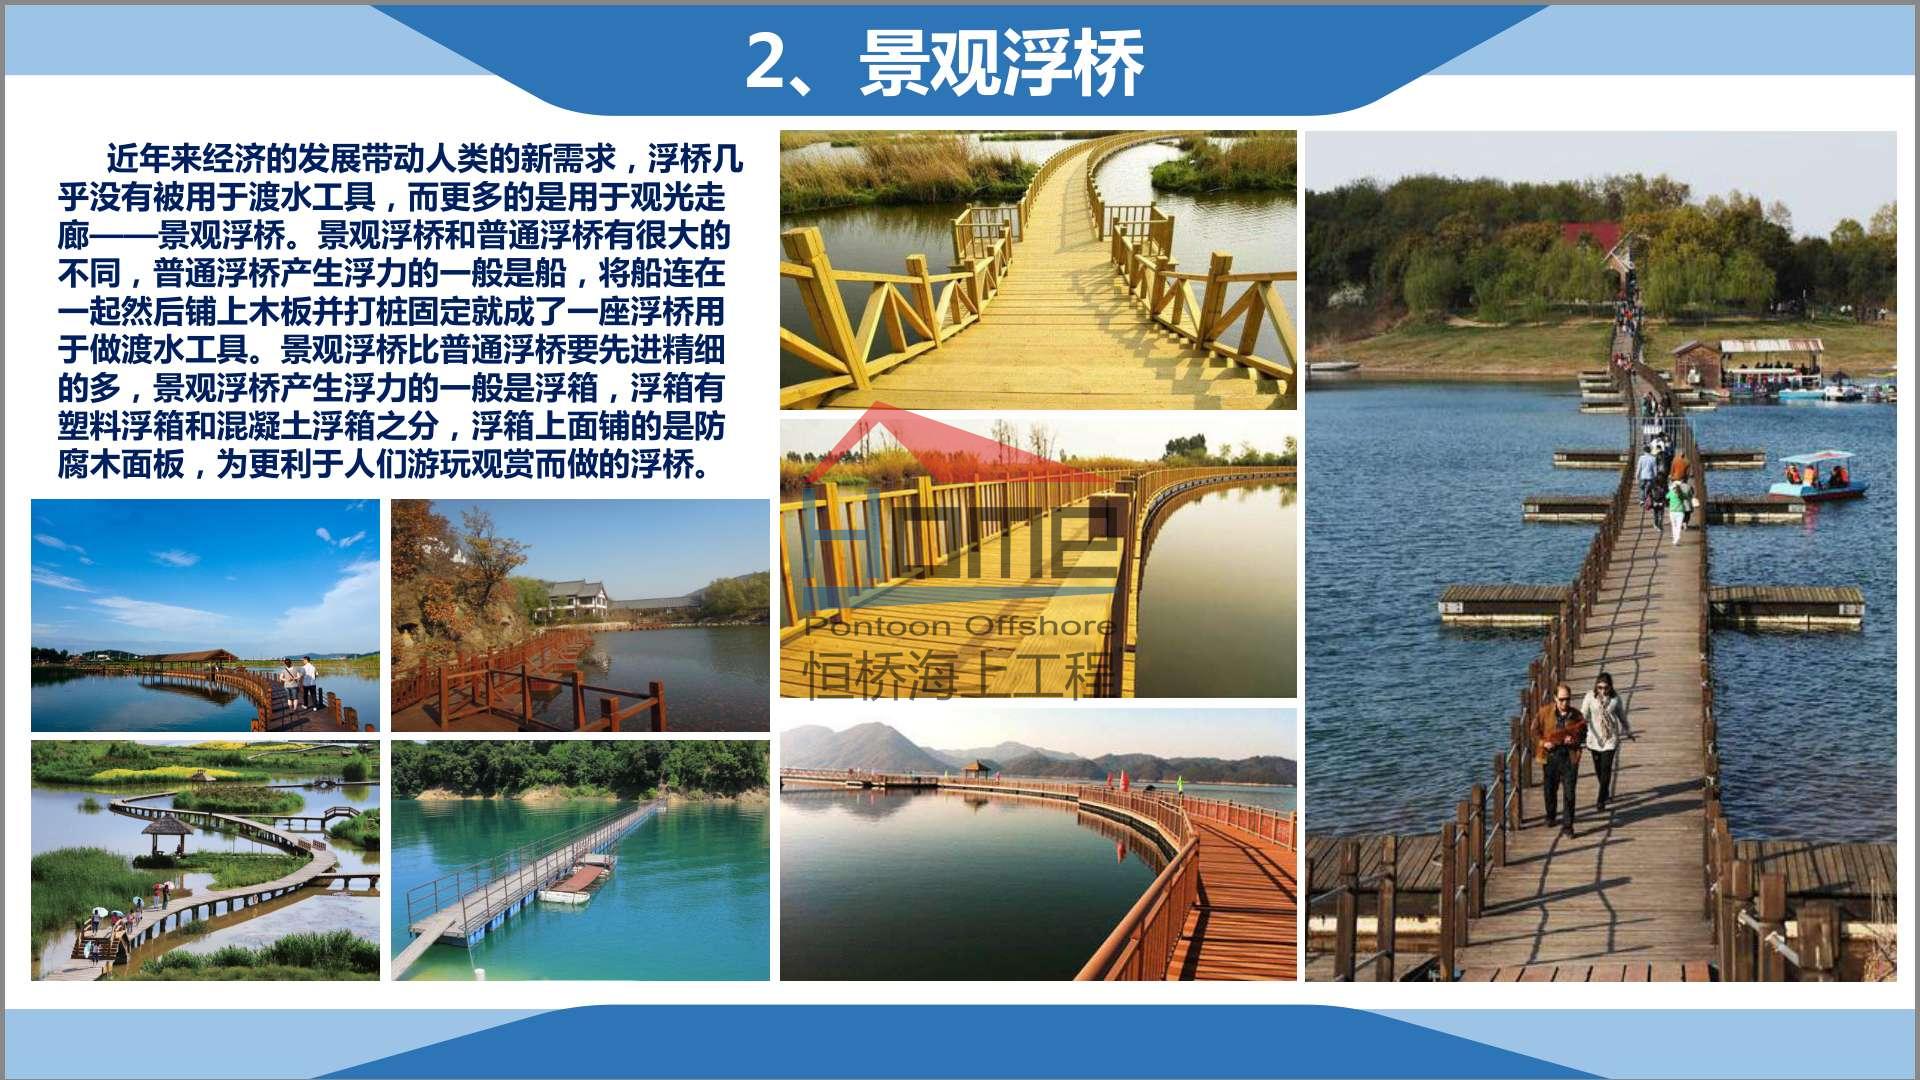 广州恒桥游艇码头龙舟码头 浮桥栈桥水上工程《宣传册》